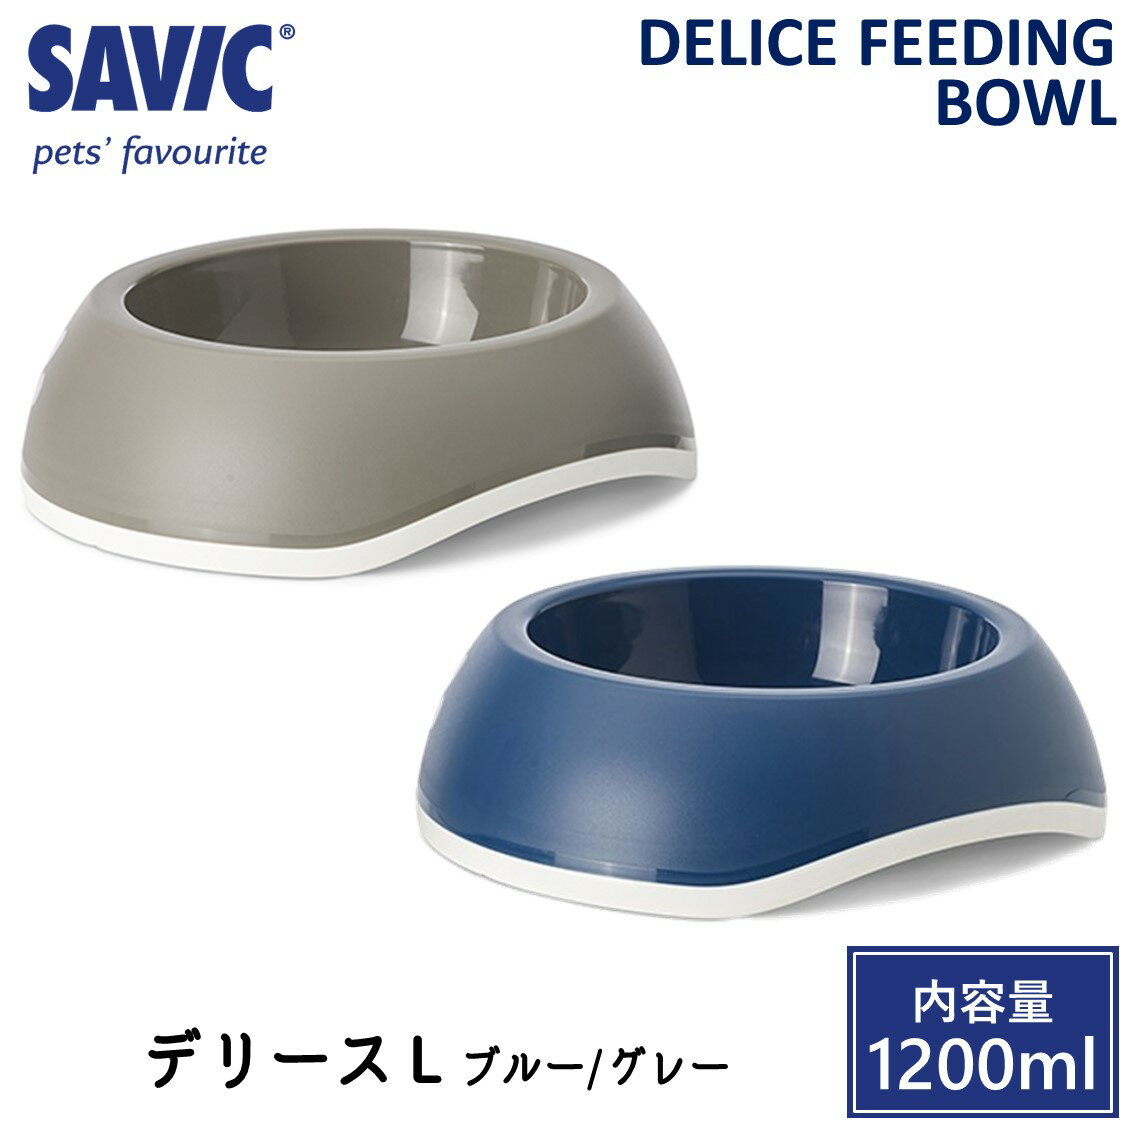 商品名 SAVIC デリース L 素材／材質 プラスチック 色 ・ブルー ・グレー 重量(約) 222g 本体サイズ(約) 外径： 26.5cm 内径：18.0cm 高さ：8.0cm 内容量：1200ml 商品説明 SAVIC(セイヴィック...